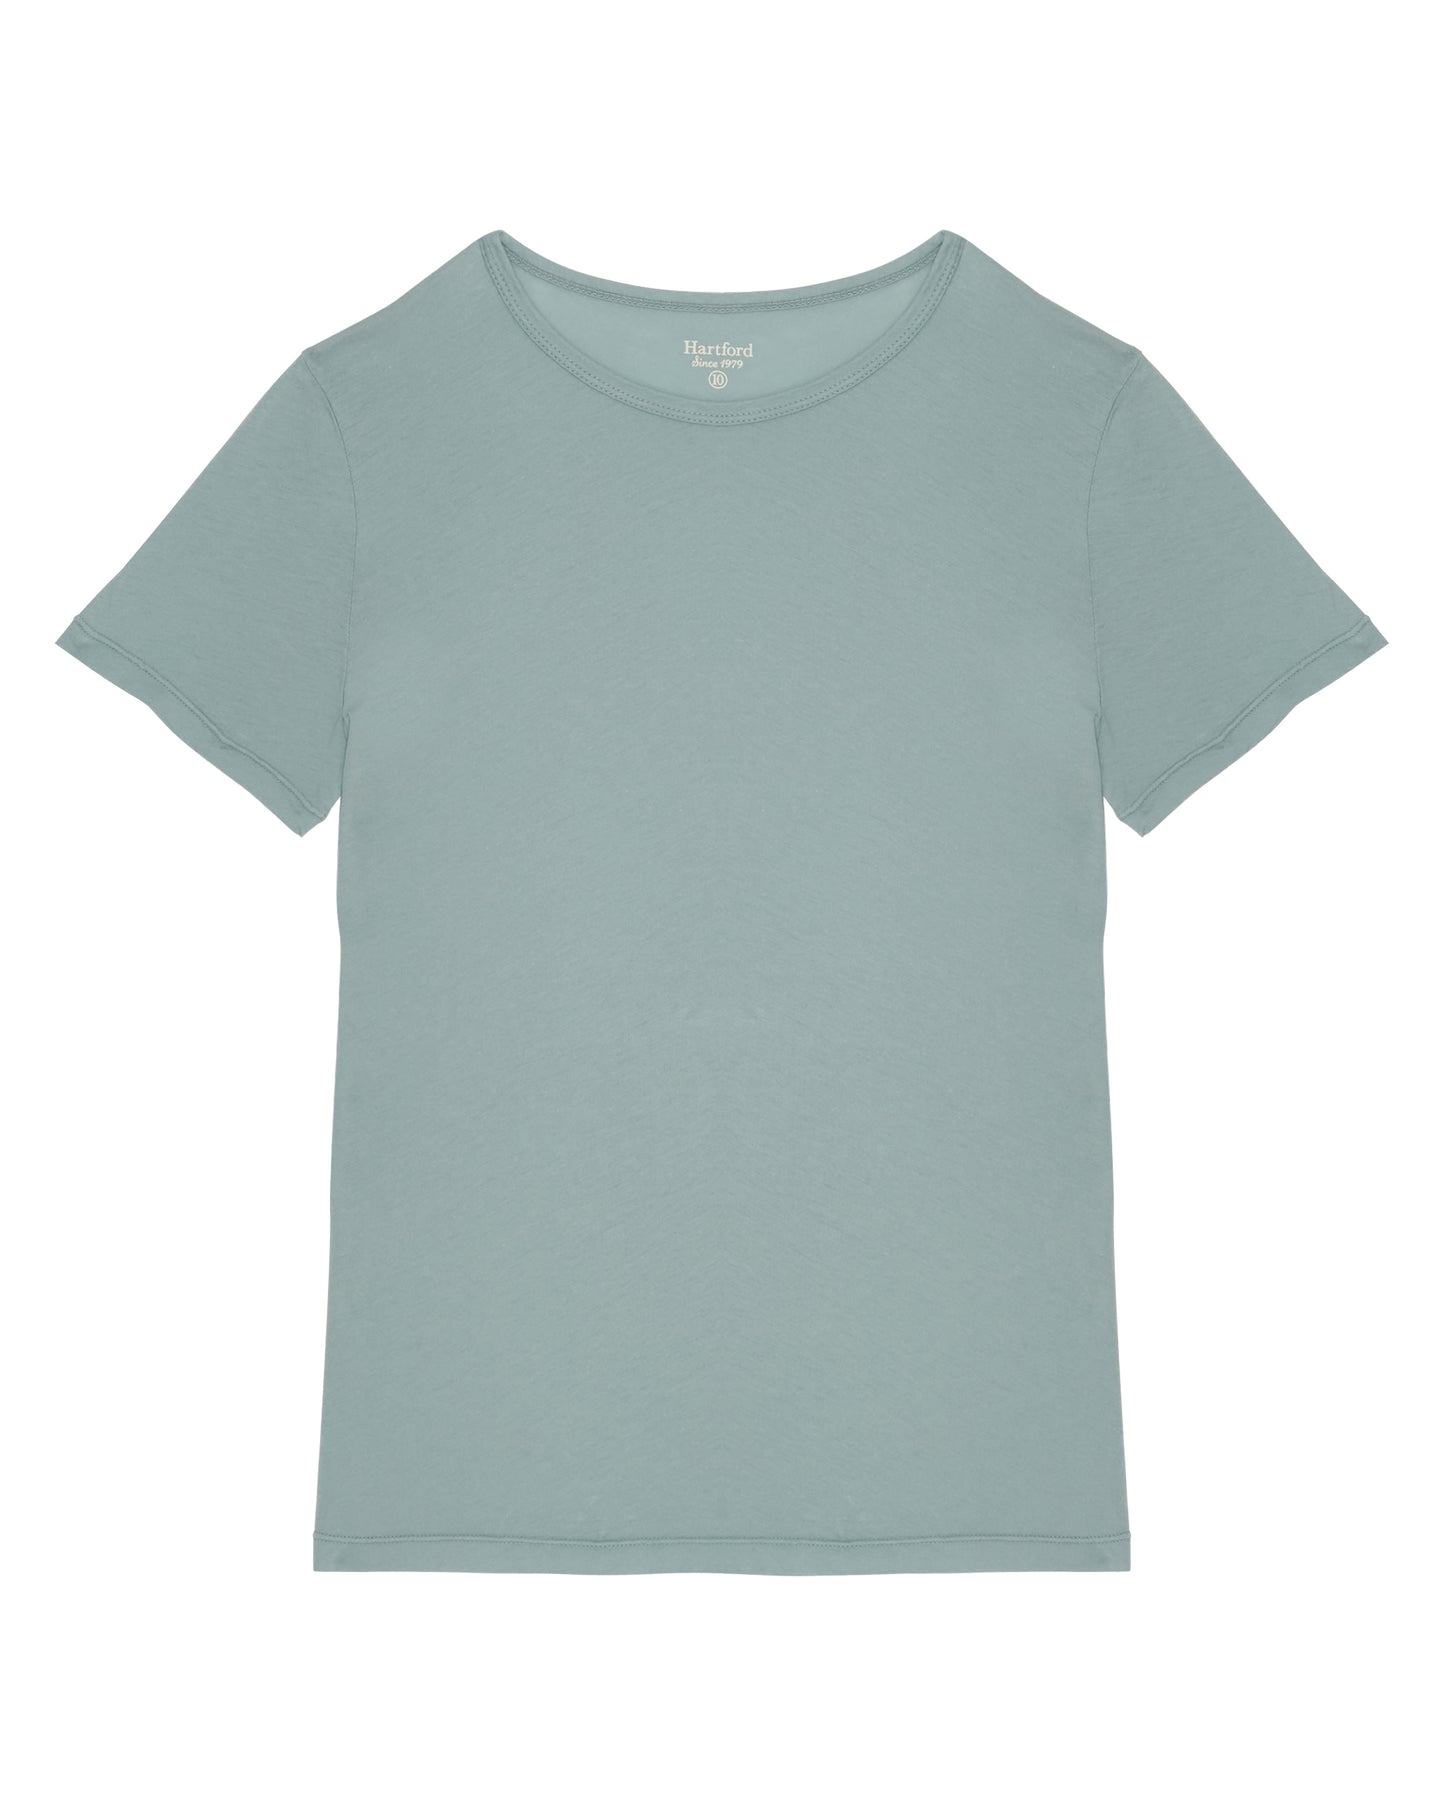 Boy's Sage Light Jersey T-shirt